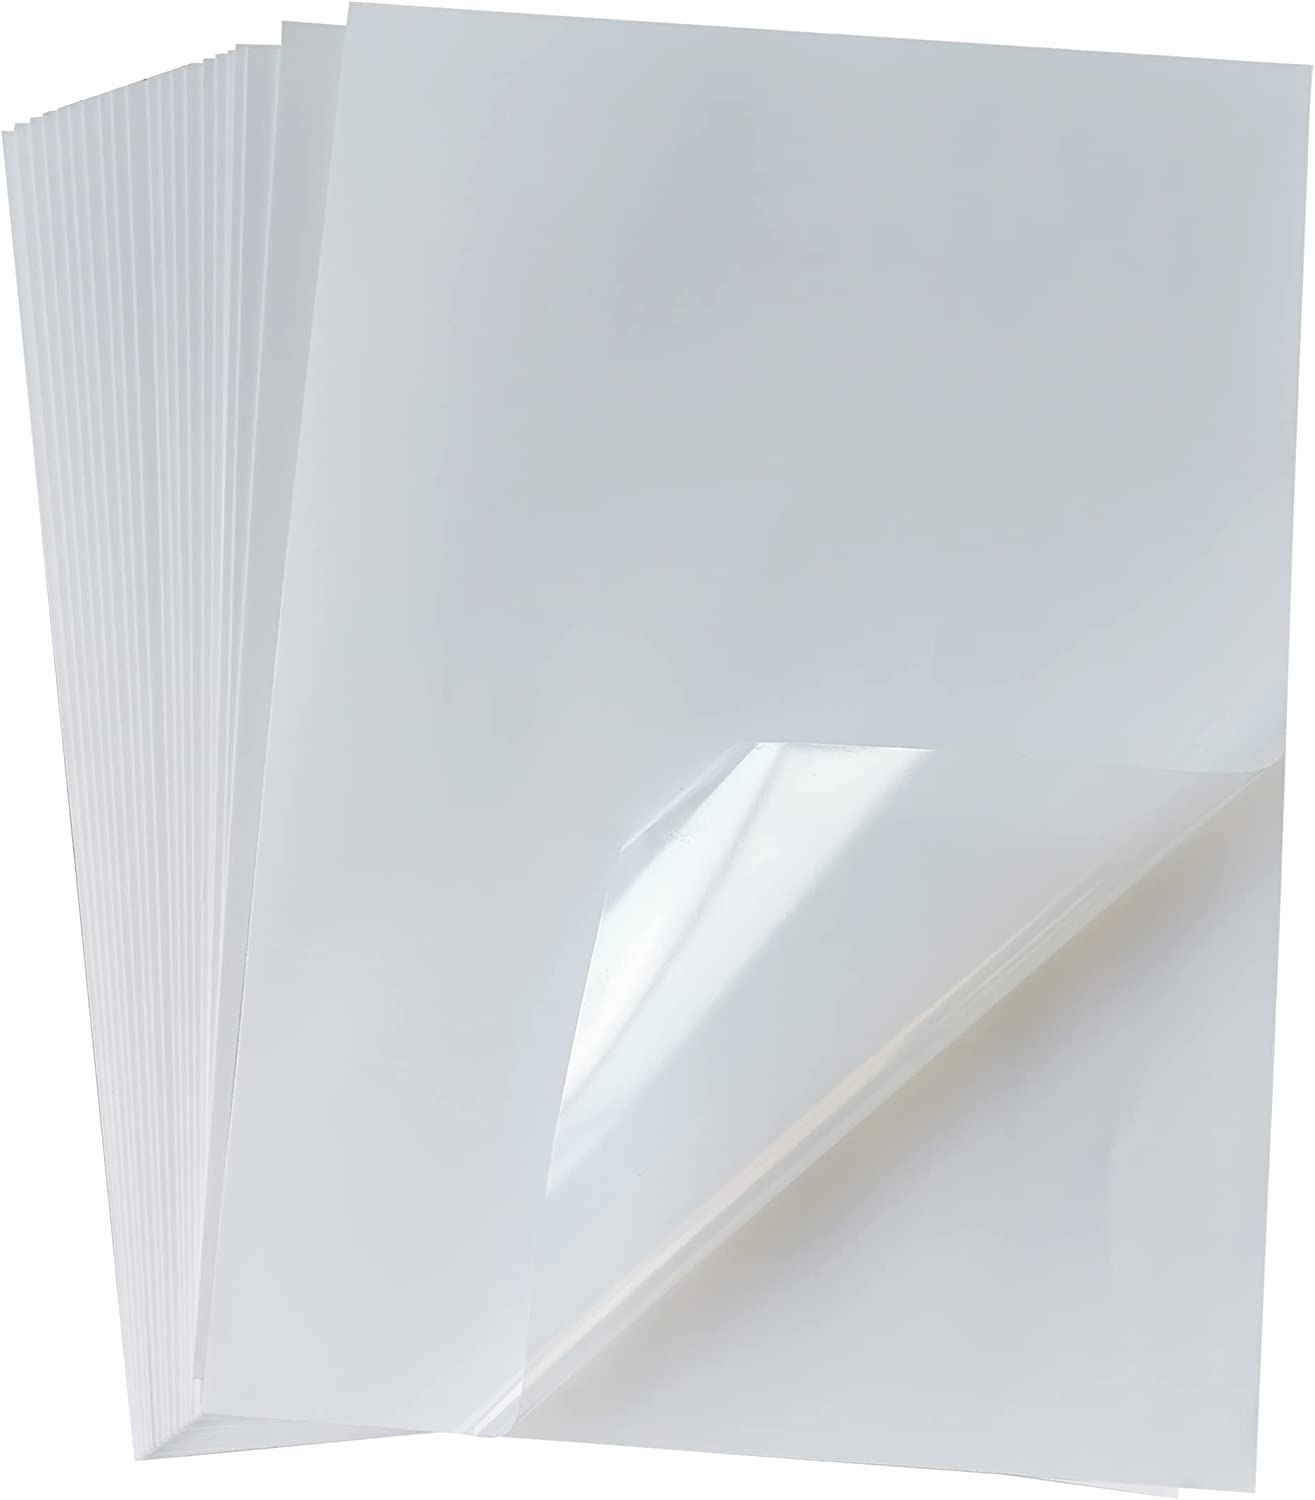 Papier autocollant en vinyle imprimable de qualité supérieure pour votre  imprimante à jet d'encre ou laser – 15 feuilles de papier autocollant blanc  brillant imperméable – Sèche rapidement et maintient l'encre magnifiquement